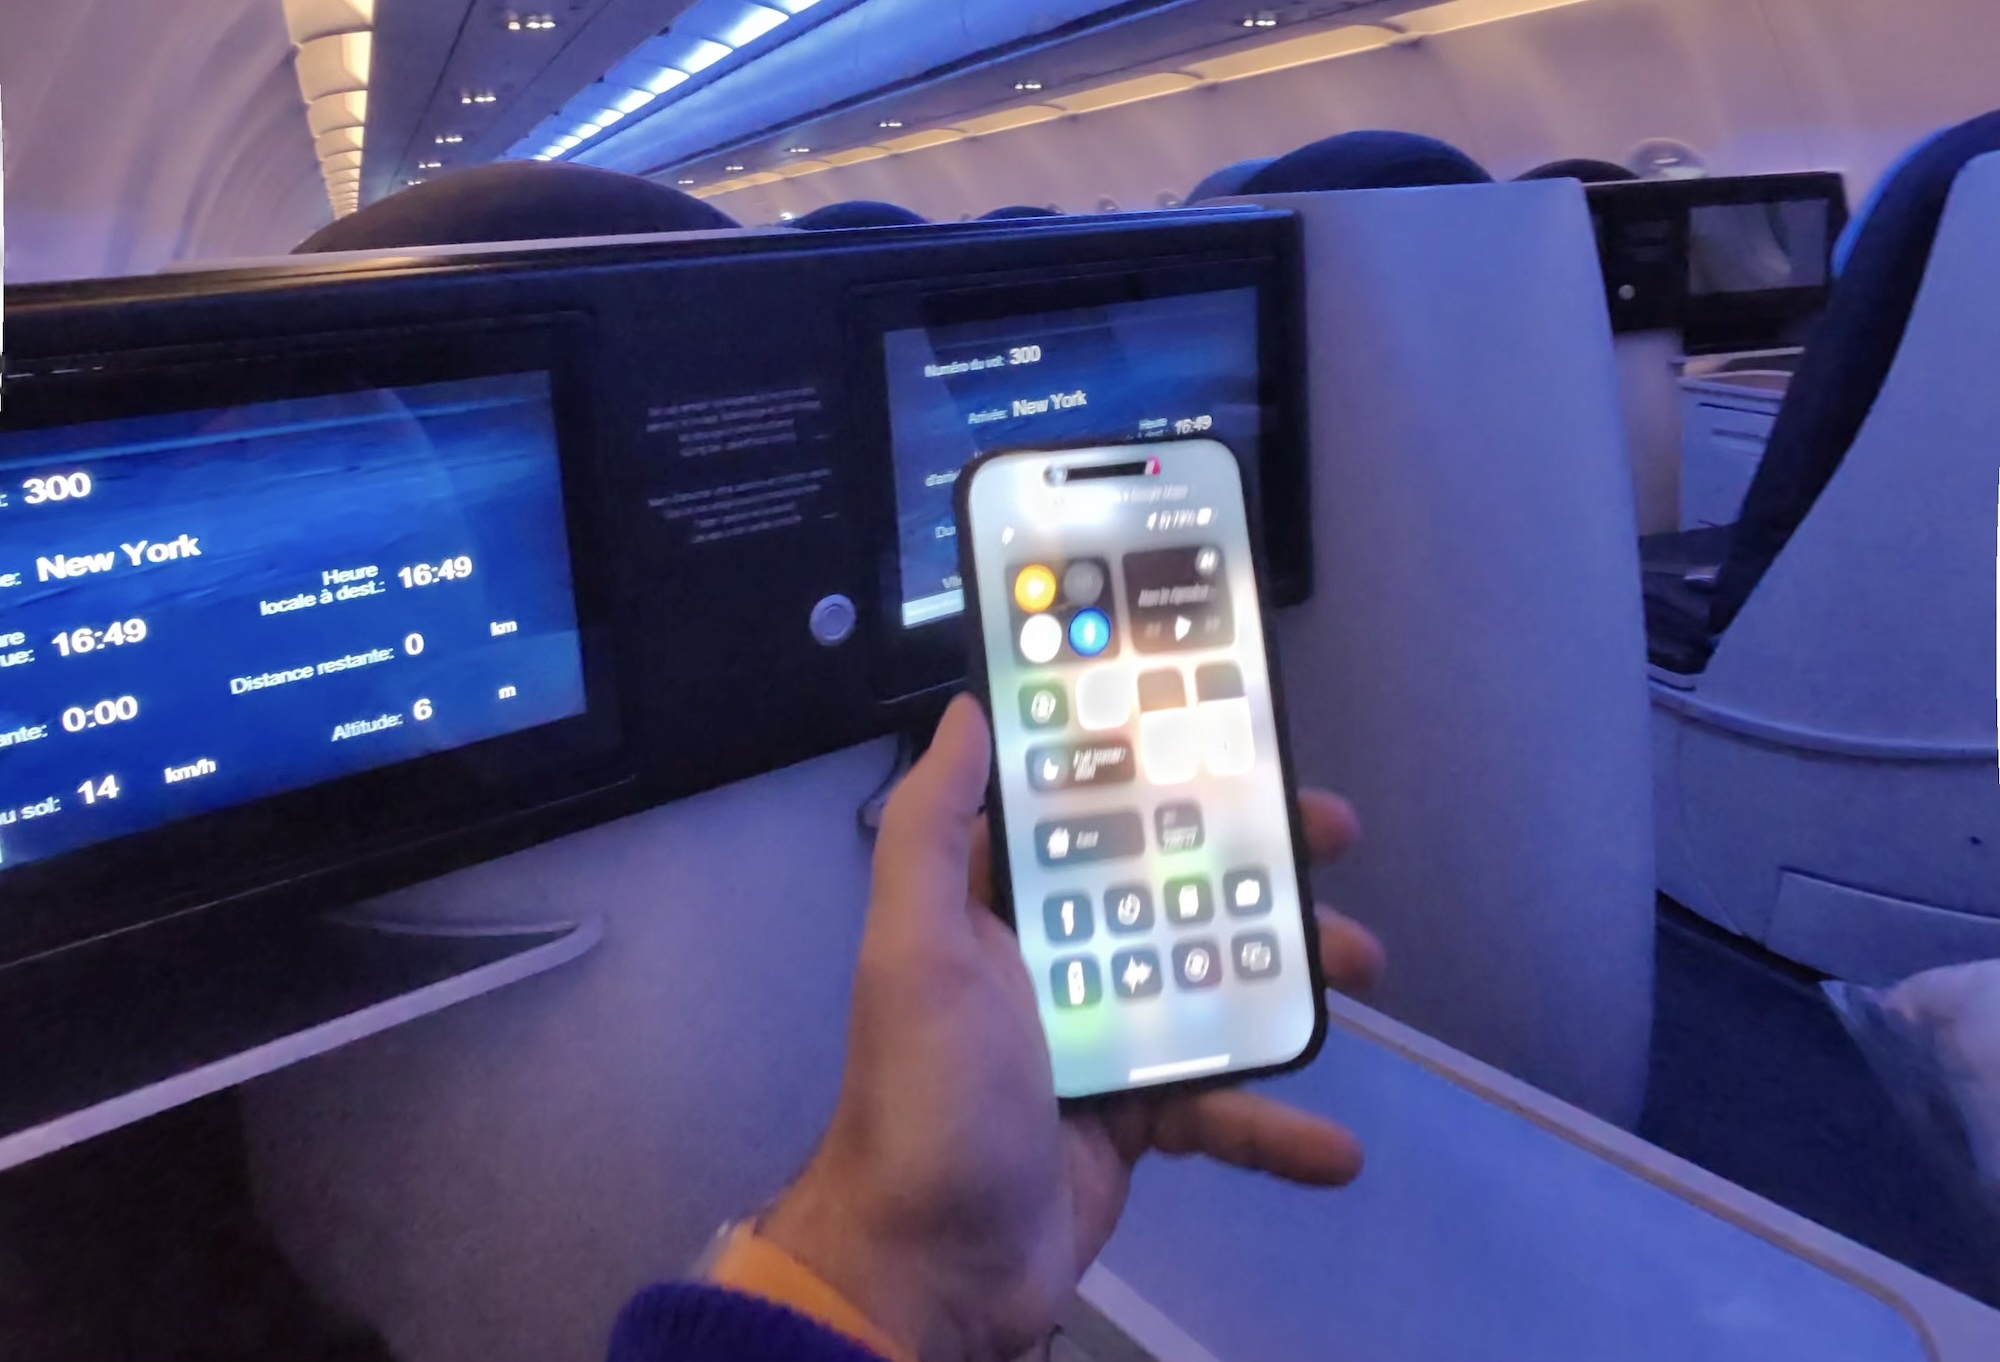 Smartphone a bordo, parla il pilota: quando è davvero pericoloso non averli in modalità aereo